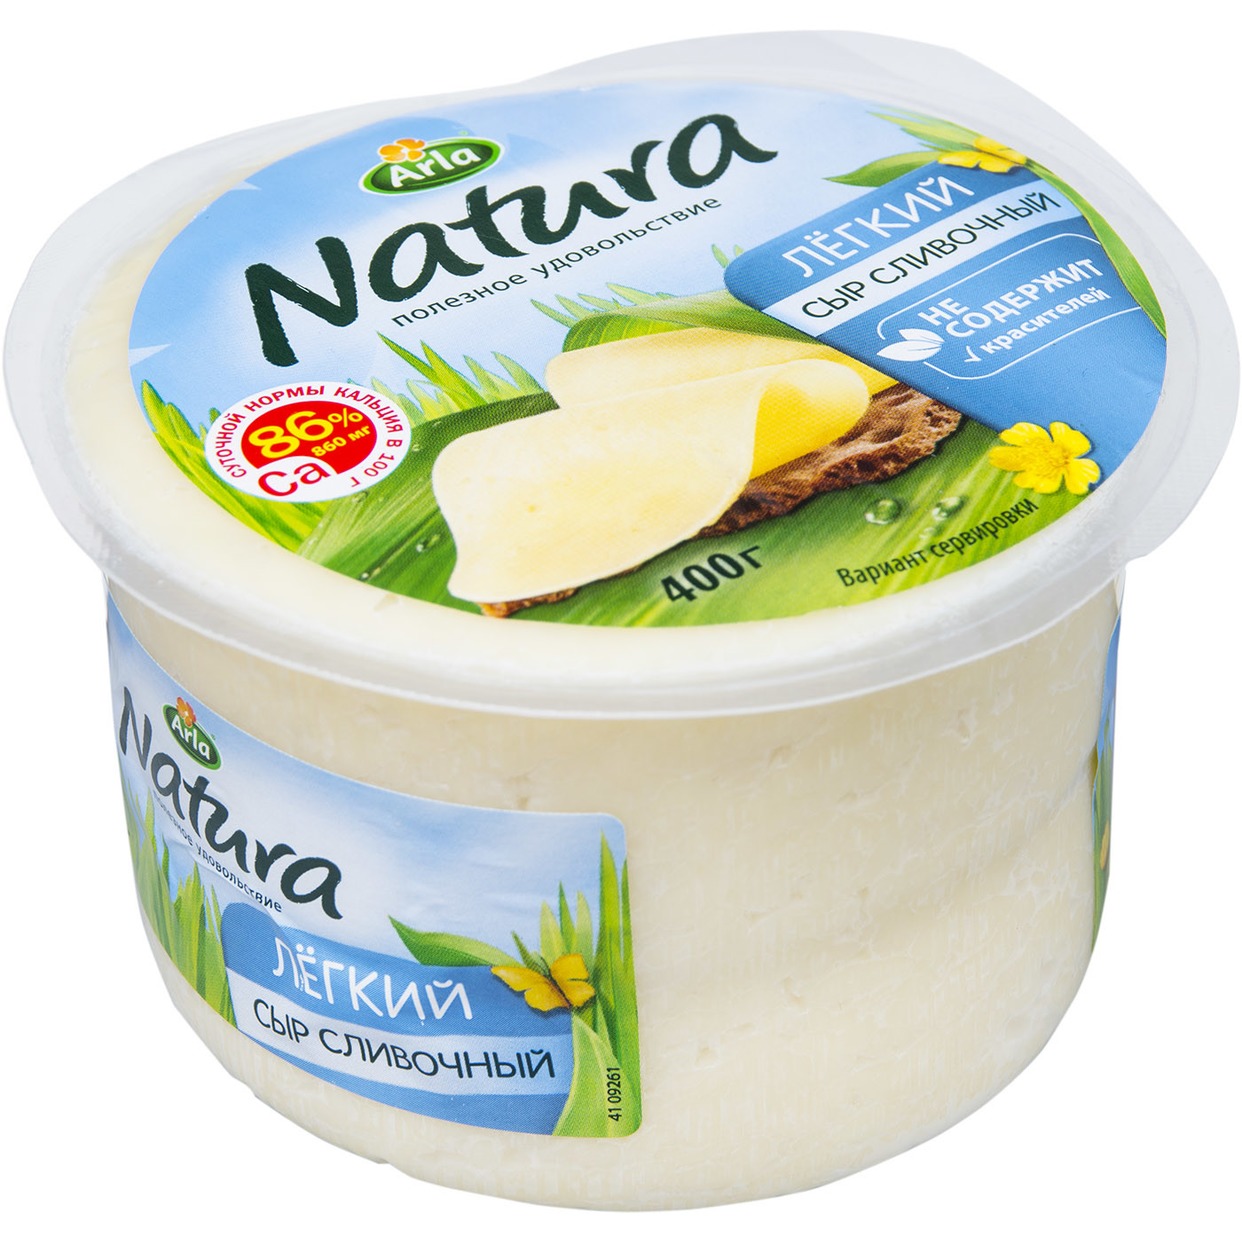 Сыр Arla Natura "Сливочный Легкий" мдж 30% 400 гр